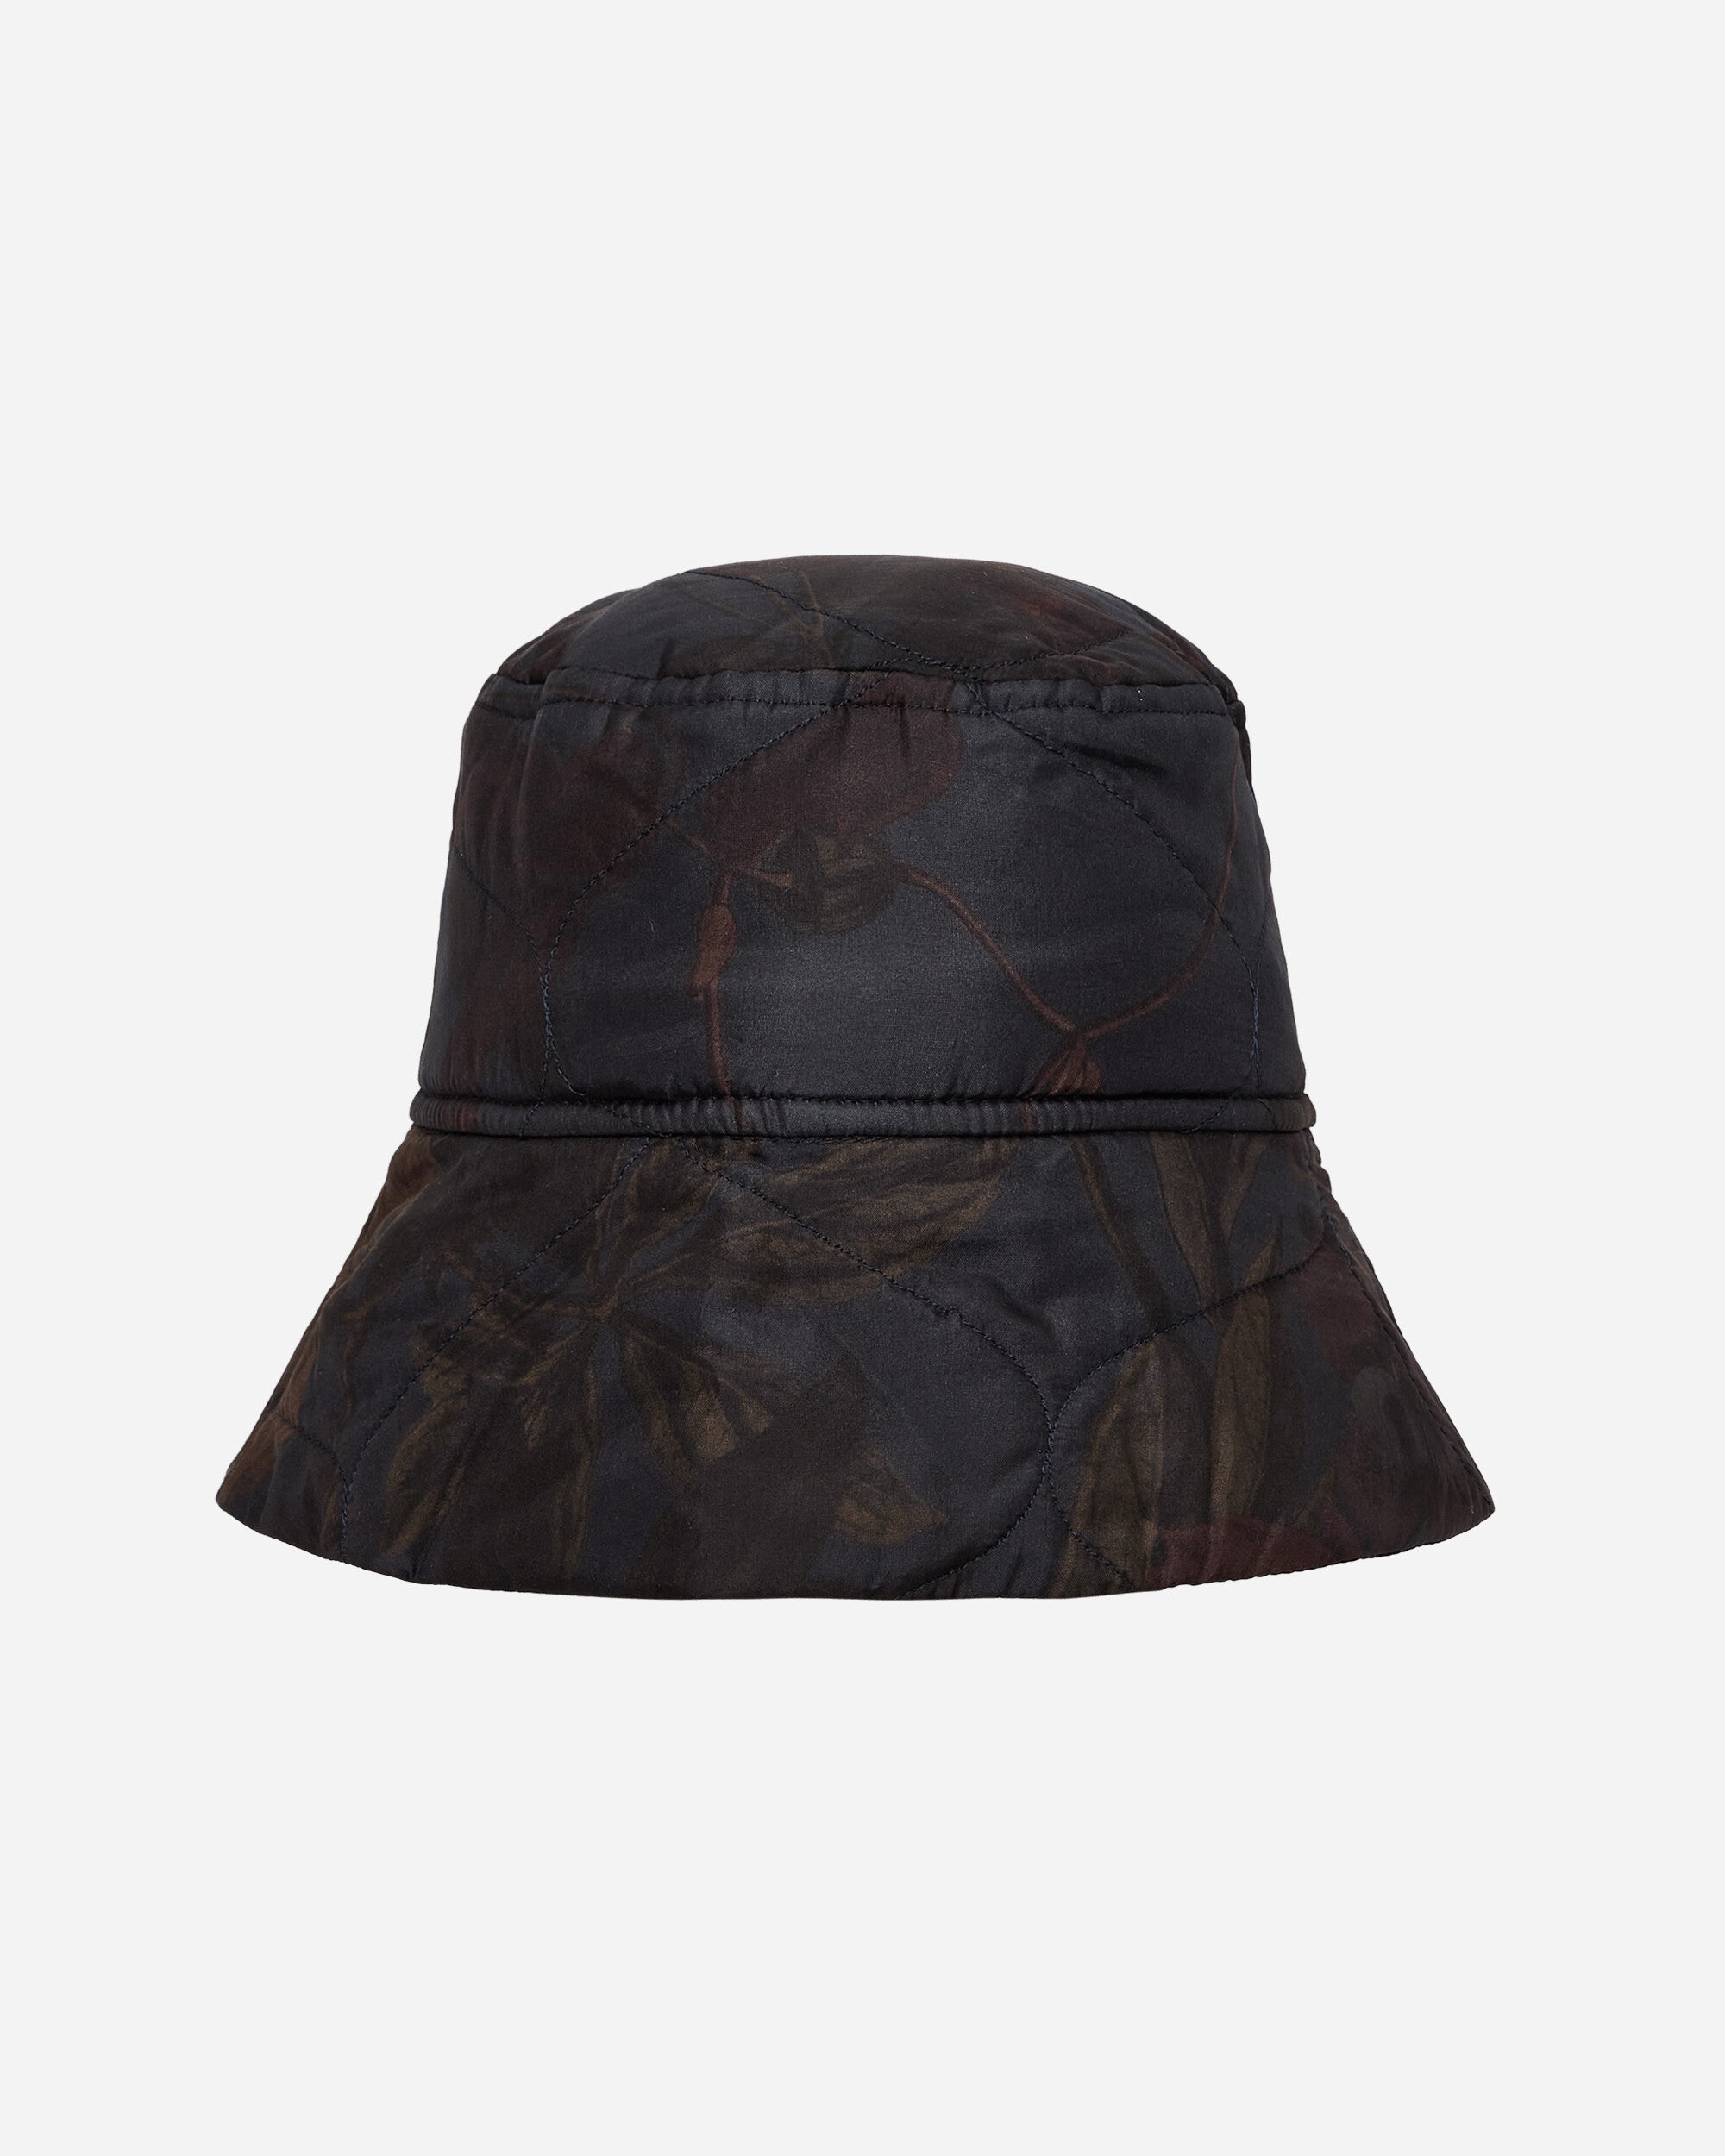 Dries Van Noten Gilly Bucket Hat Navy Hats Bucket 232-029502-7507 509